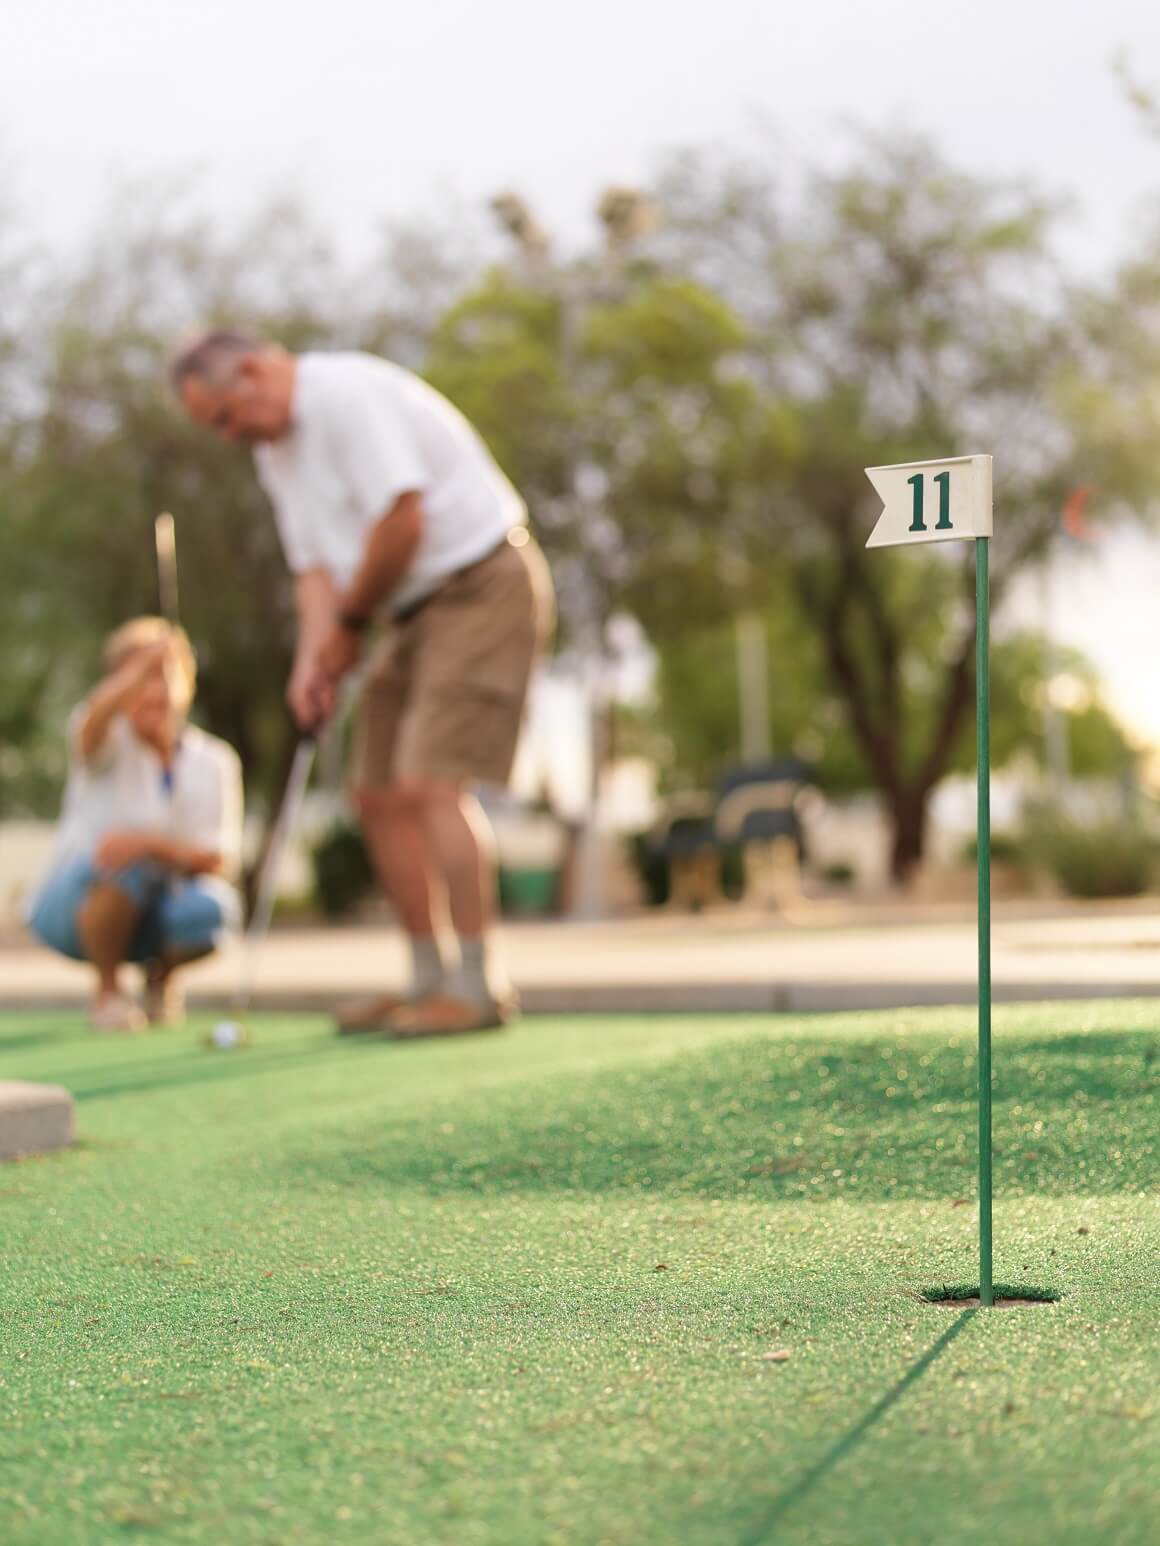 Studija je pokazala da golf ima najveći učinak na lipide (masnoće) u krvi i metabolizam glukoze